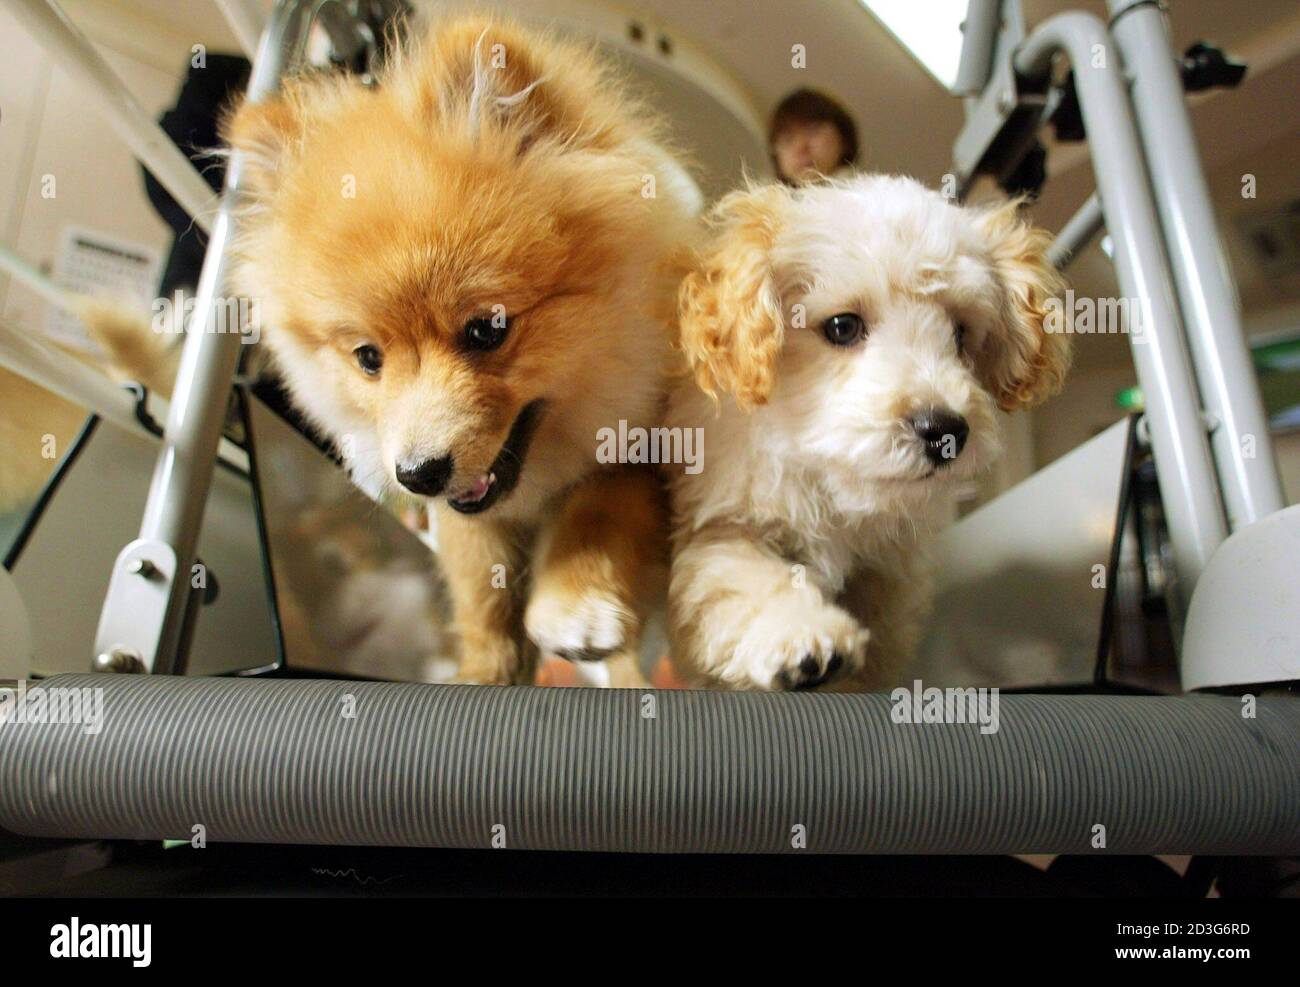 Los cachorros corren de lado a lado en una máquina de cinta de correr para  perros durante un entrenamiento en Ken21, una tienda de mascotas, un  proveedor de alimentos para la salud